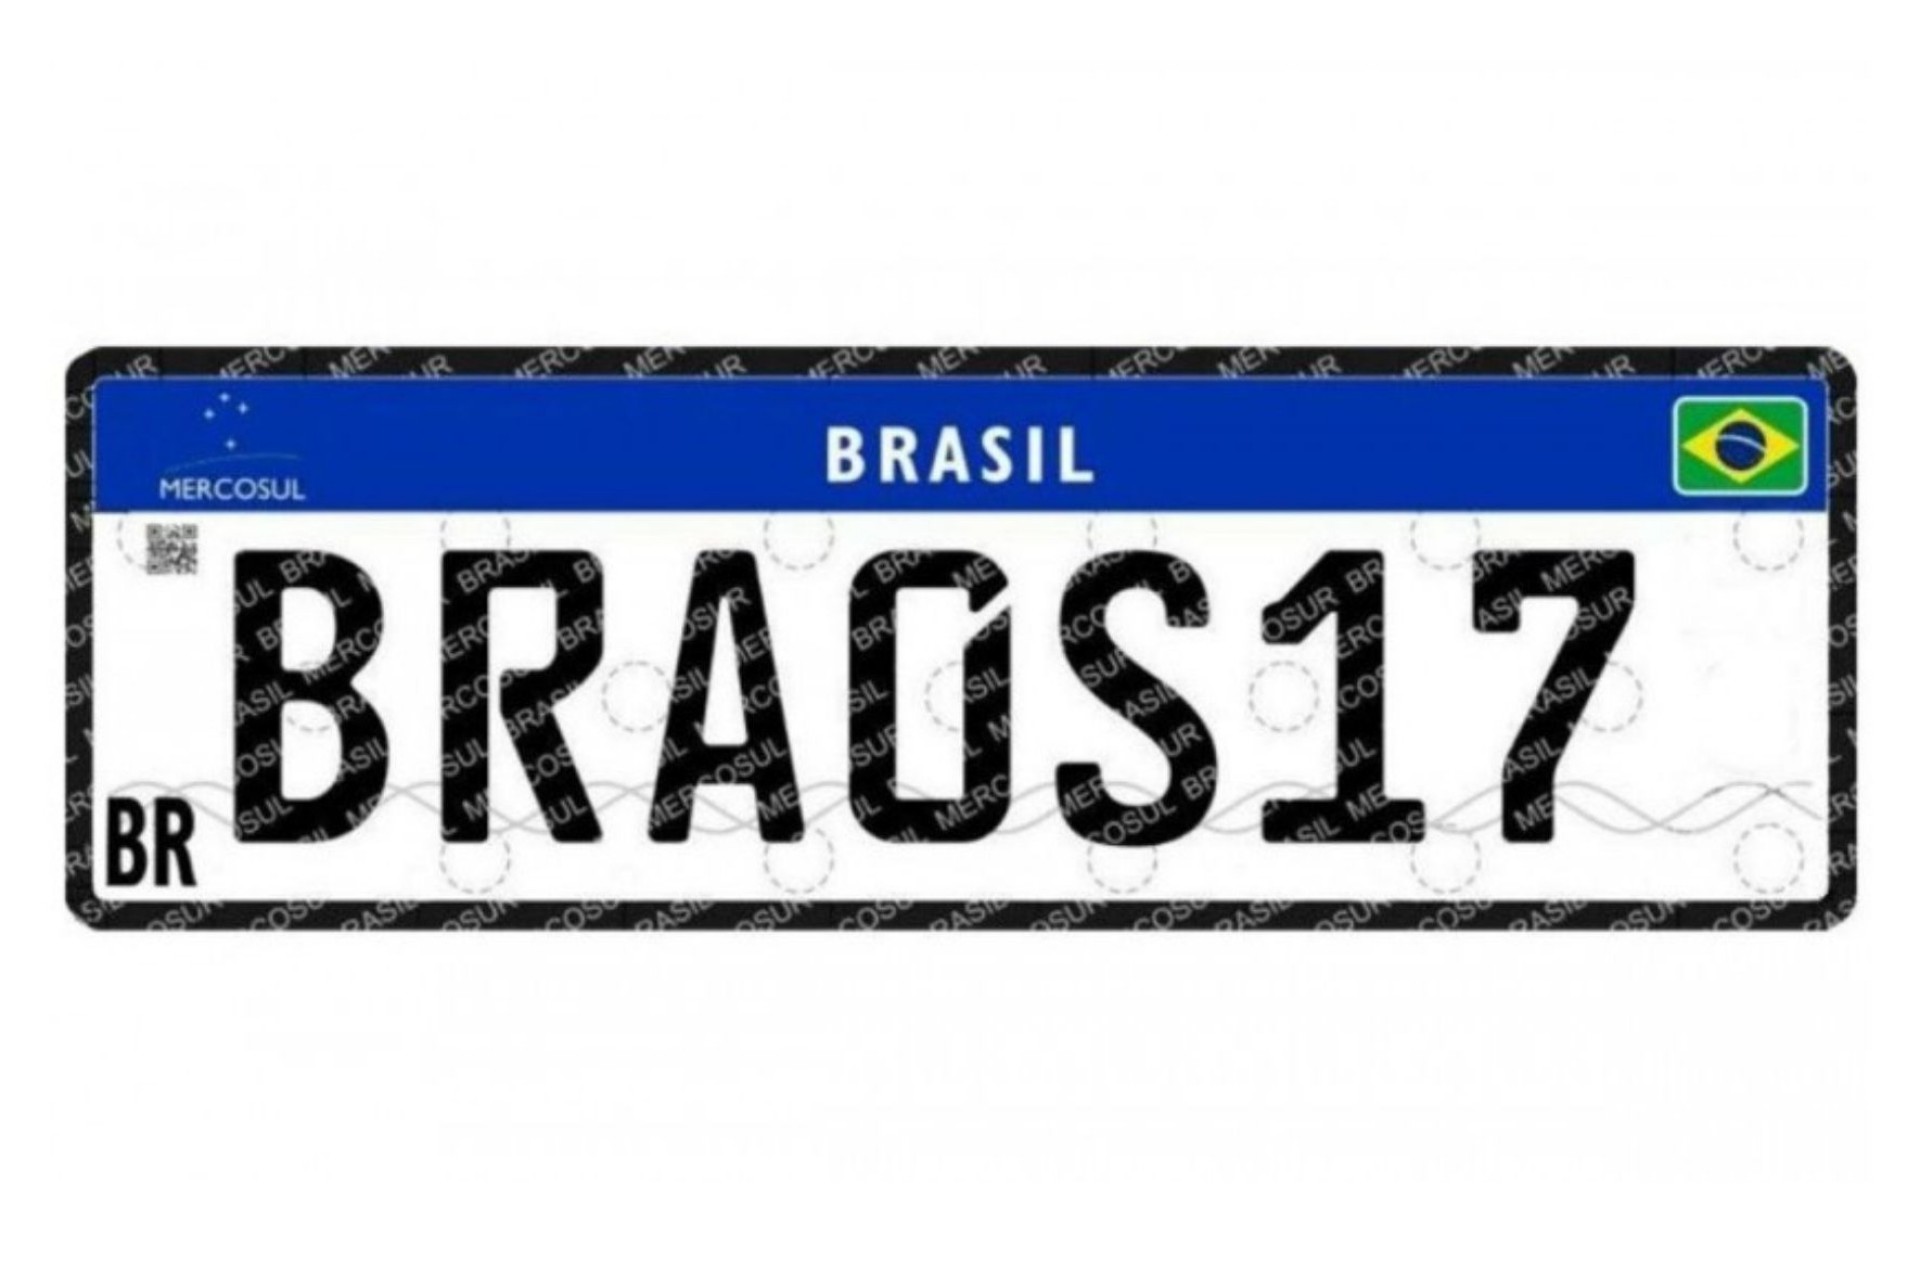 Entram em vigor no Paraná as placas do modelo Mercosul